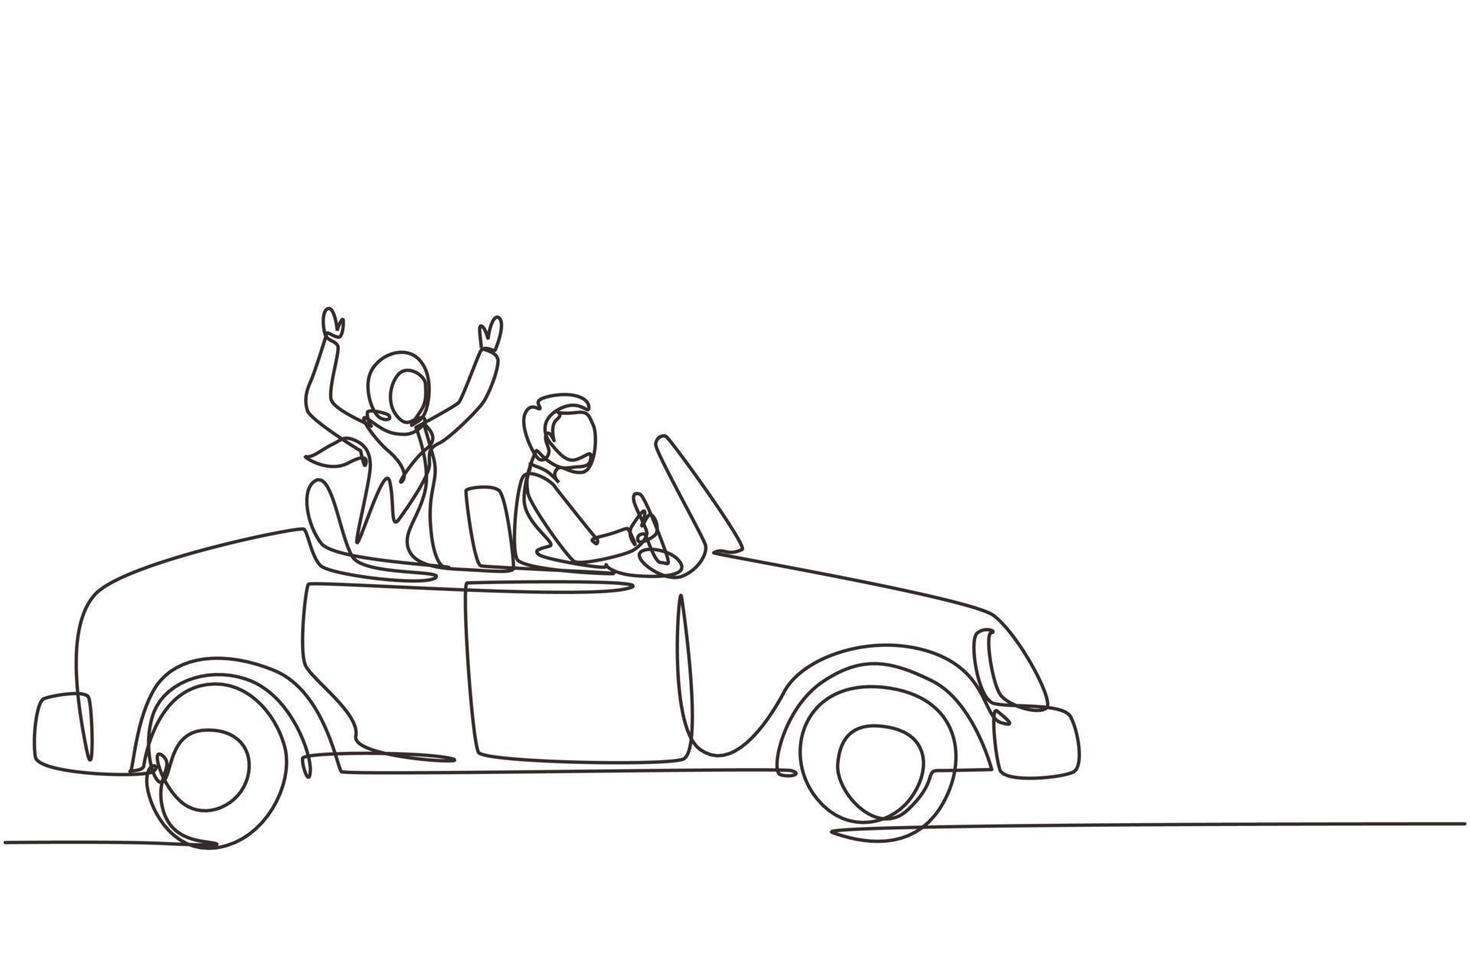 una linea continua che disegna lo sposo di una coppia araba appena sposata nel veicolo. uomo e donna felici che guidano l'auto di nozze. relazione romantica di coppia sposata. illustrazione grafica vettoriale di progettazione a linea singola